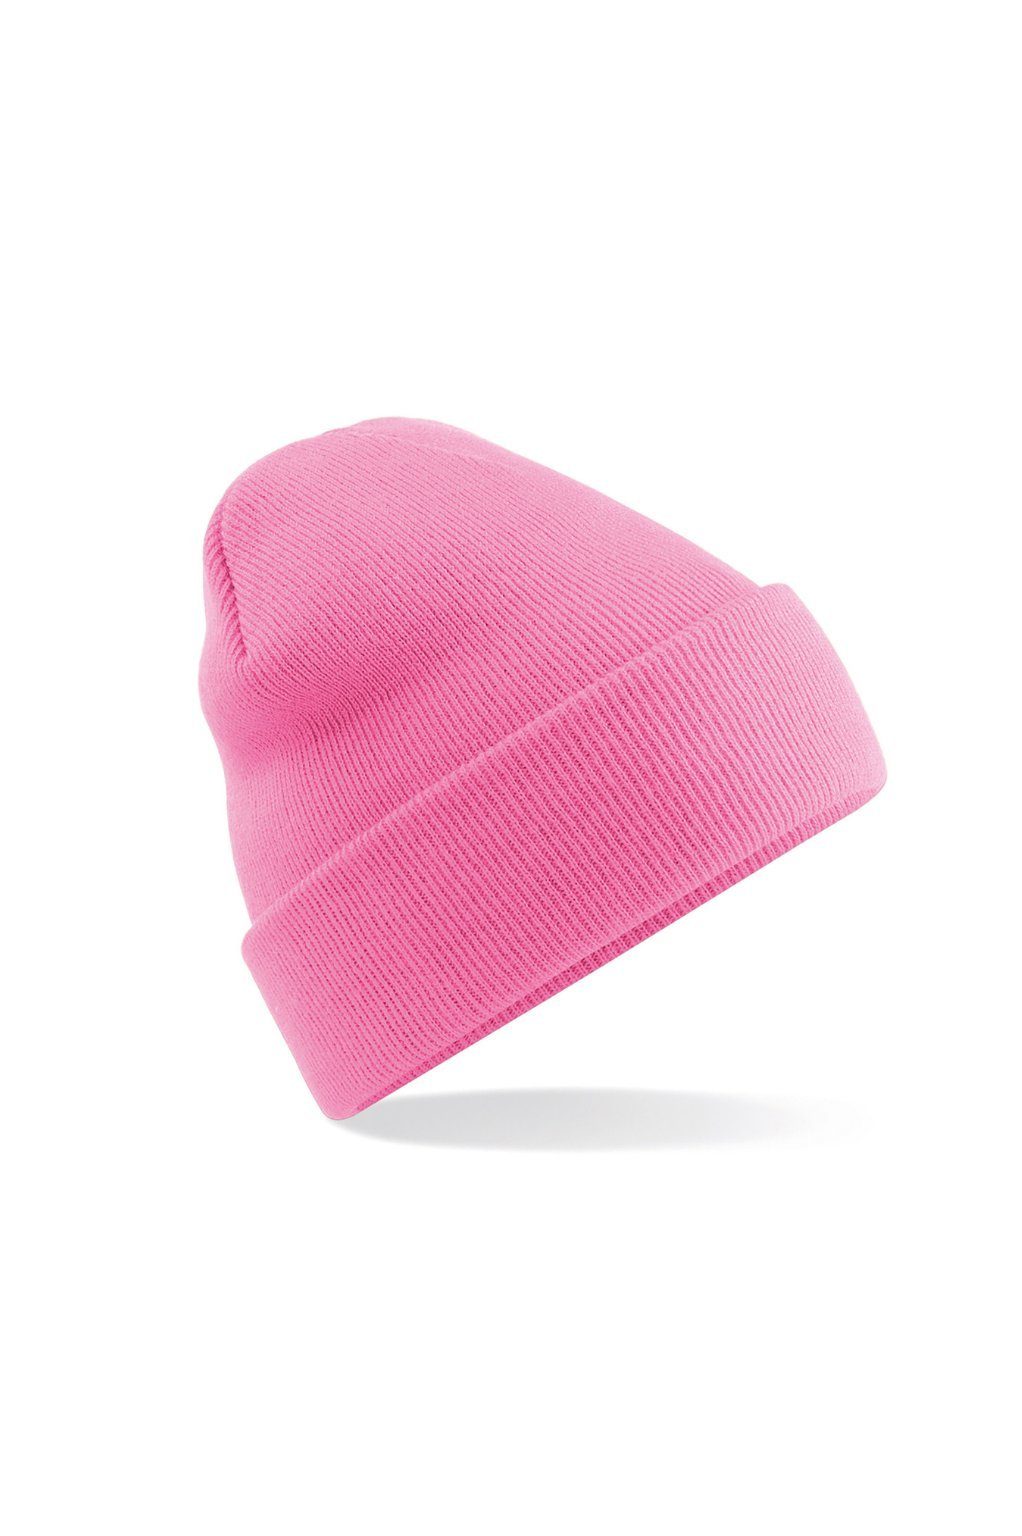 ESMINA Strickmütze Comfy Beanie - seidenweich & extrem anschmiegsam durch Soft Touch, wärmend electric pink